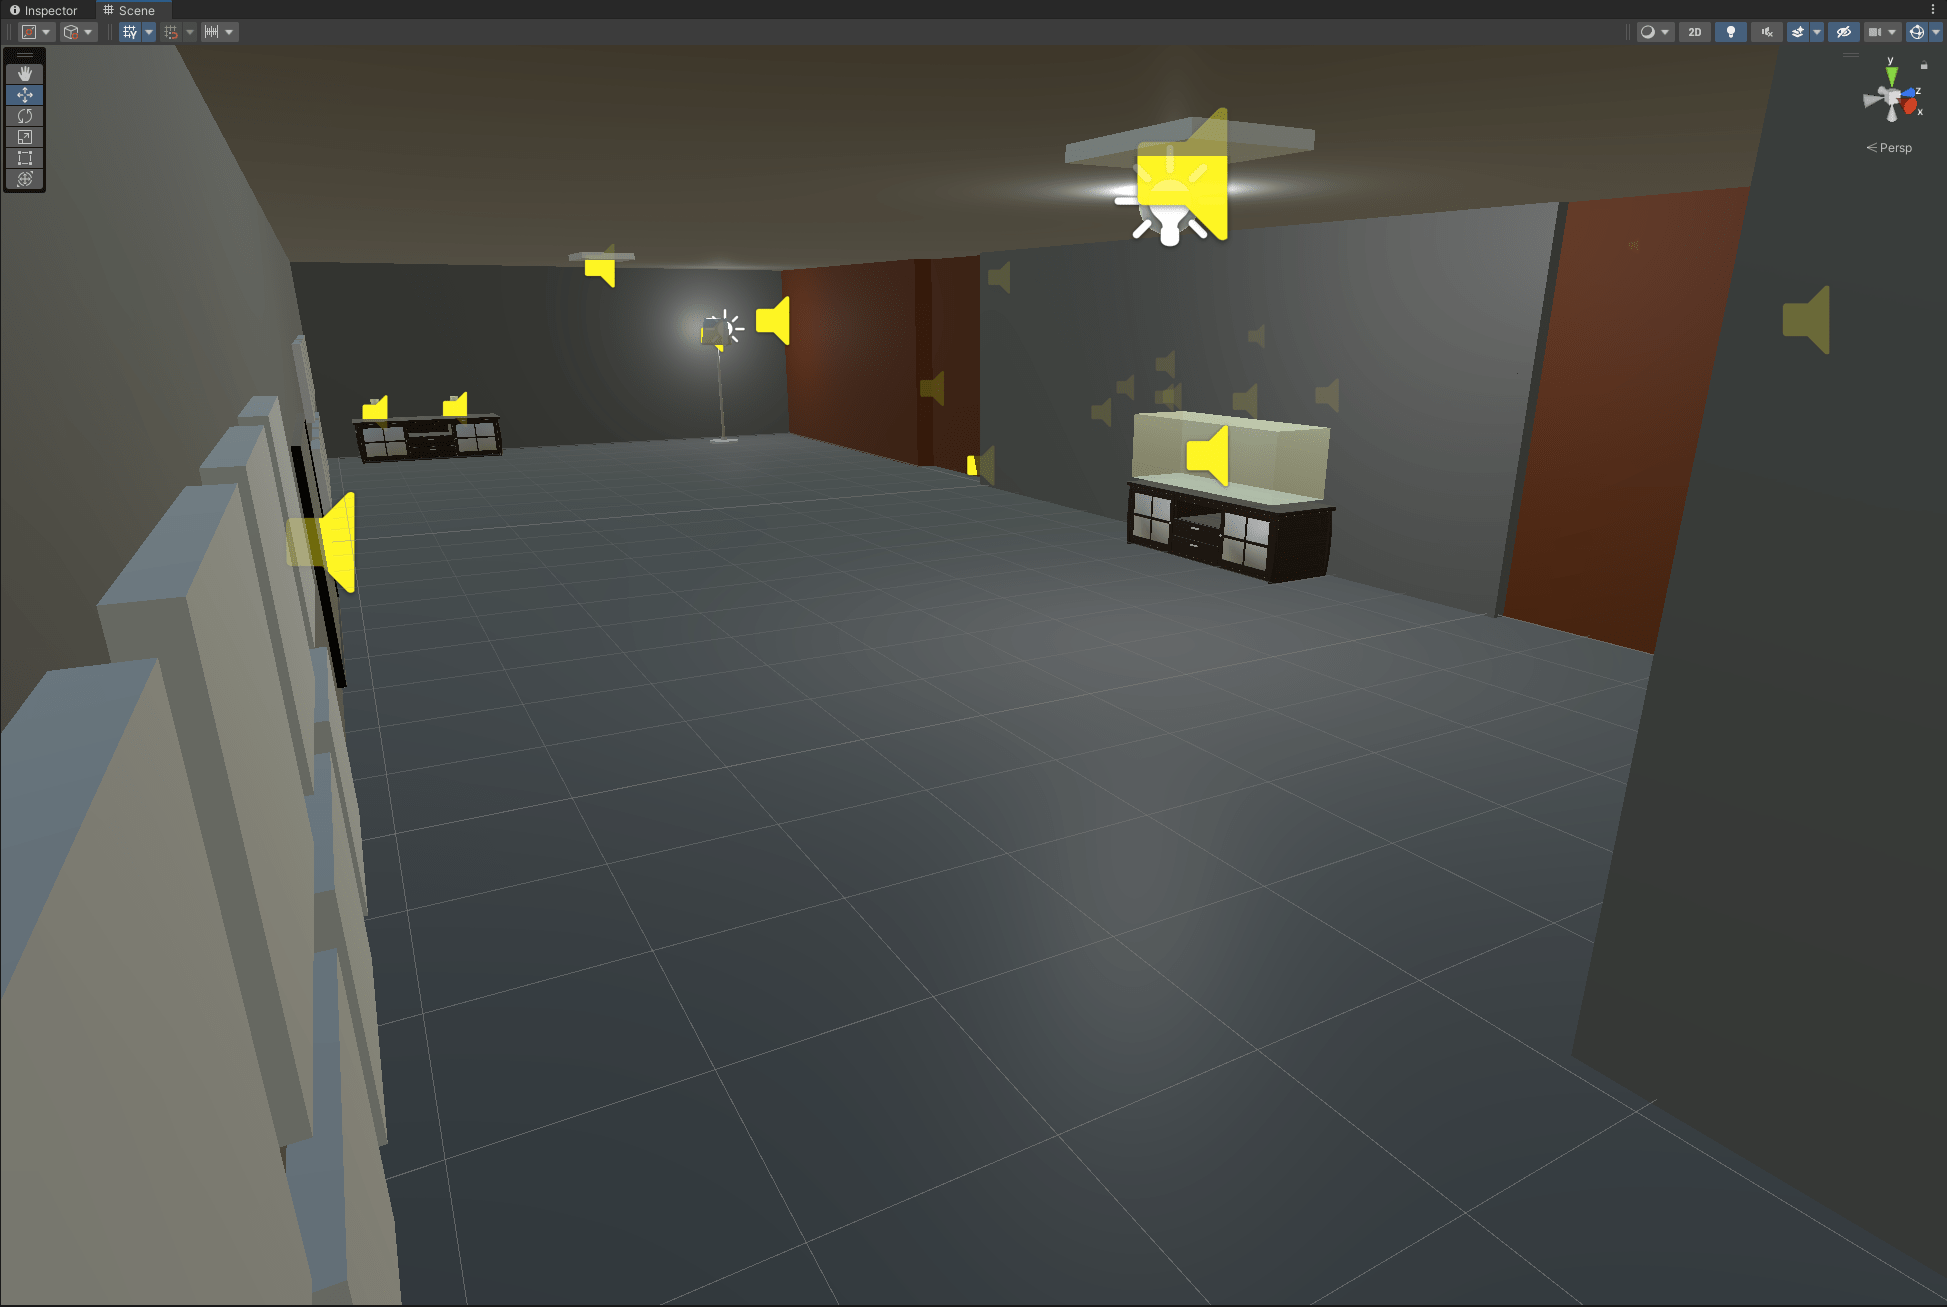 Die Umgebung von Dreamtrip Experience visuell dargestellt: Ein virtuelles 3D Labor mit Icons, welche Soundquellen darstellen.